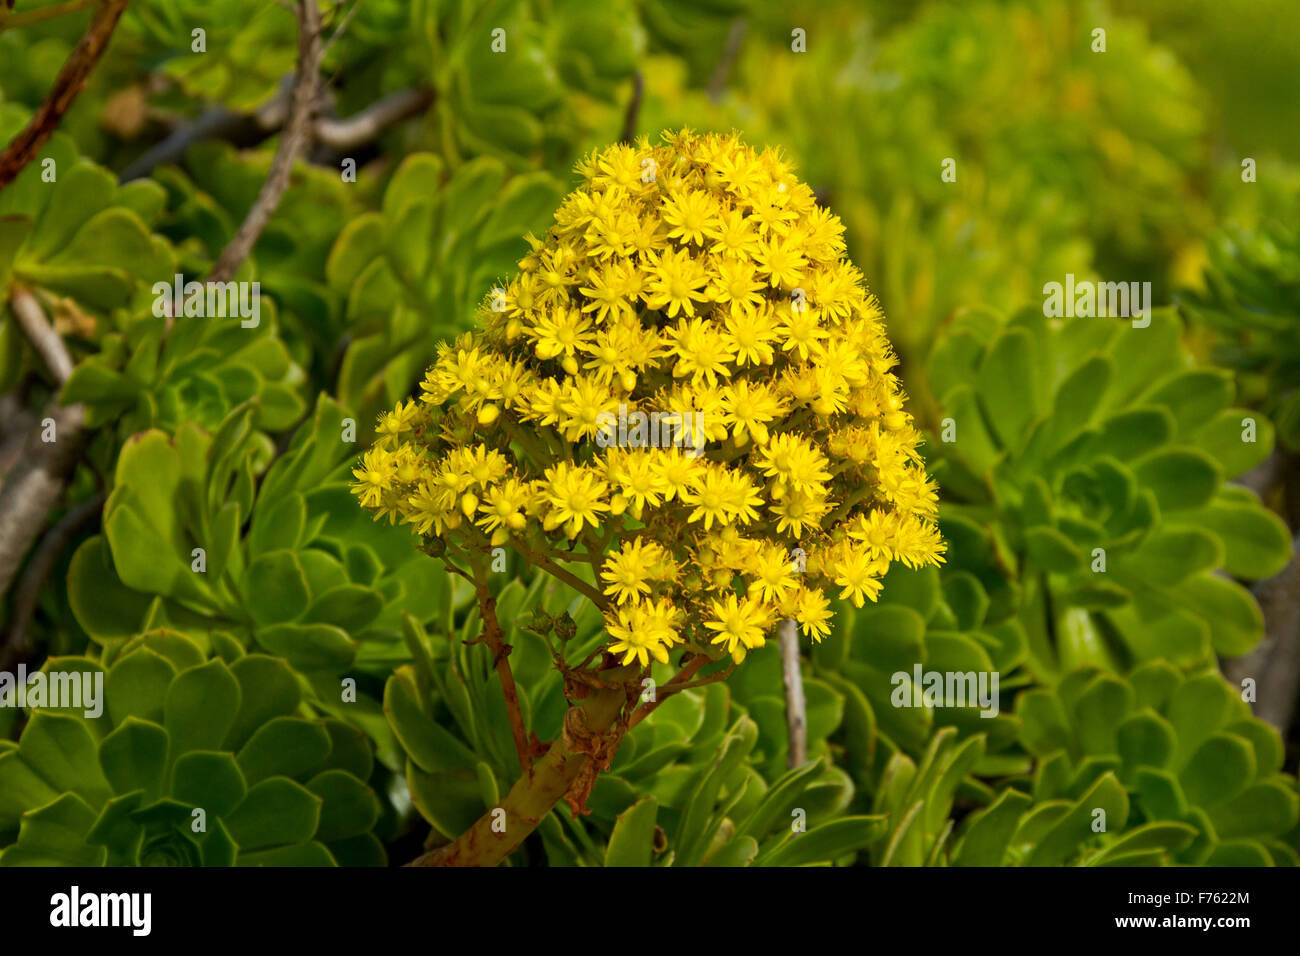 Grandes fleurs jaune vif conique & feuilles de succulentes Aeonium arboreum, arbre houseleek, une mauvaise herbe envahissante en Australie Banque D'Images